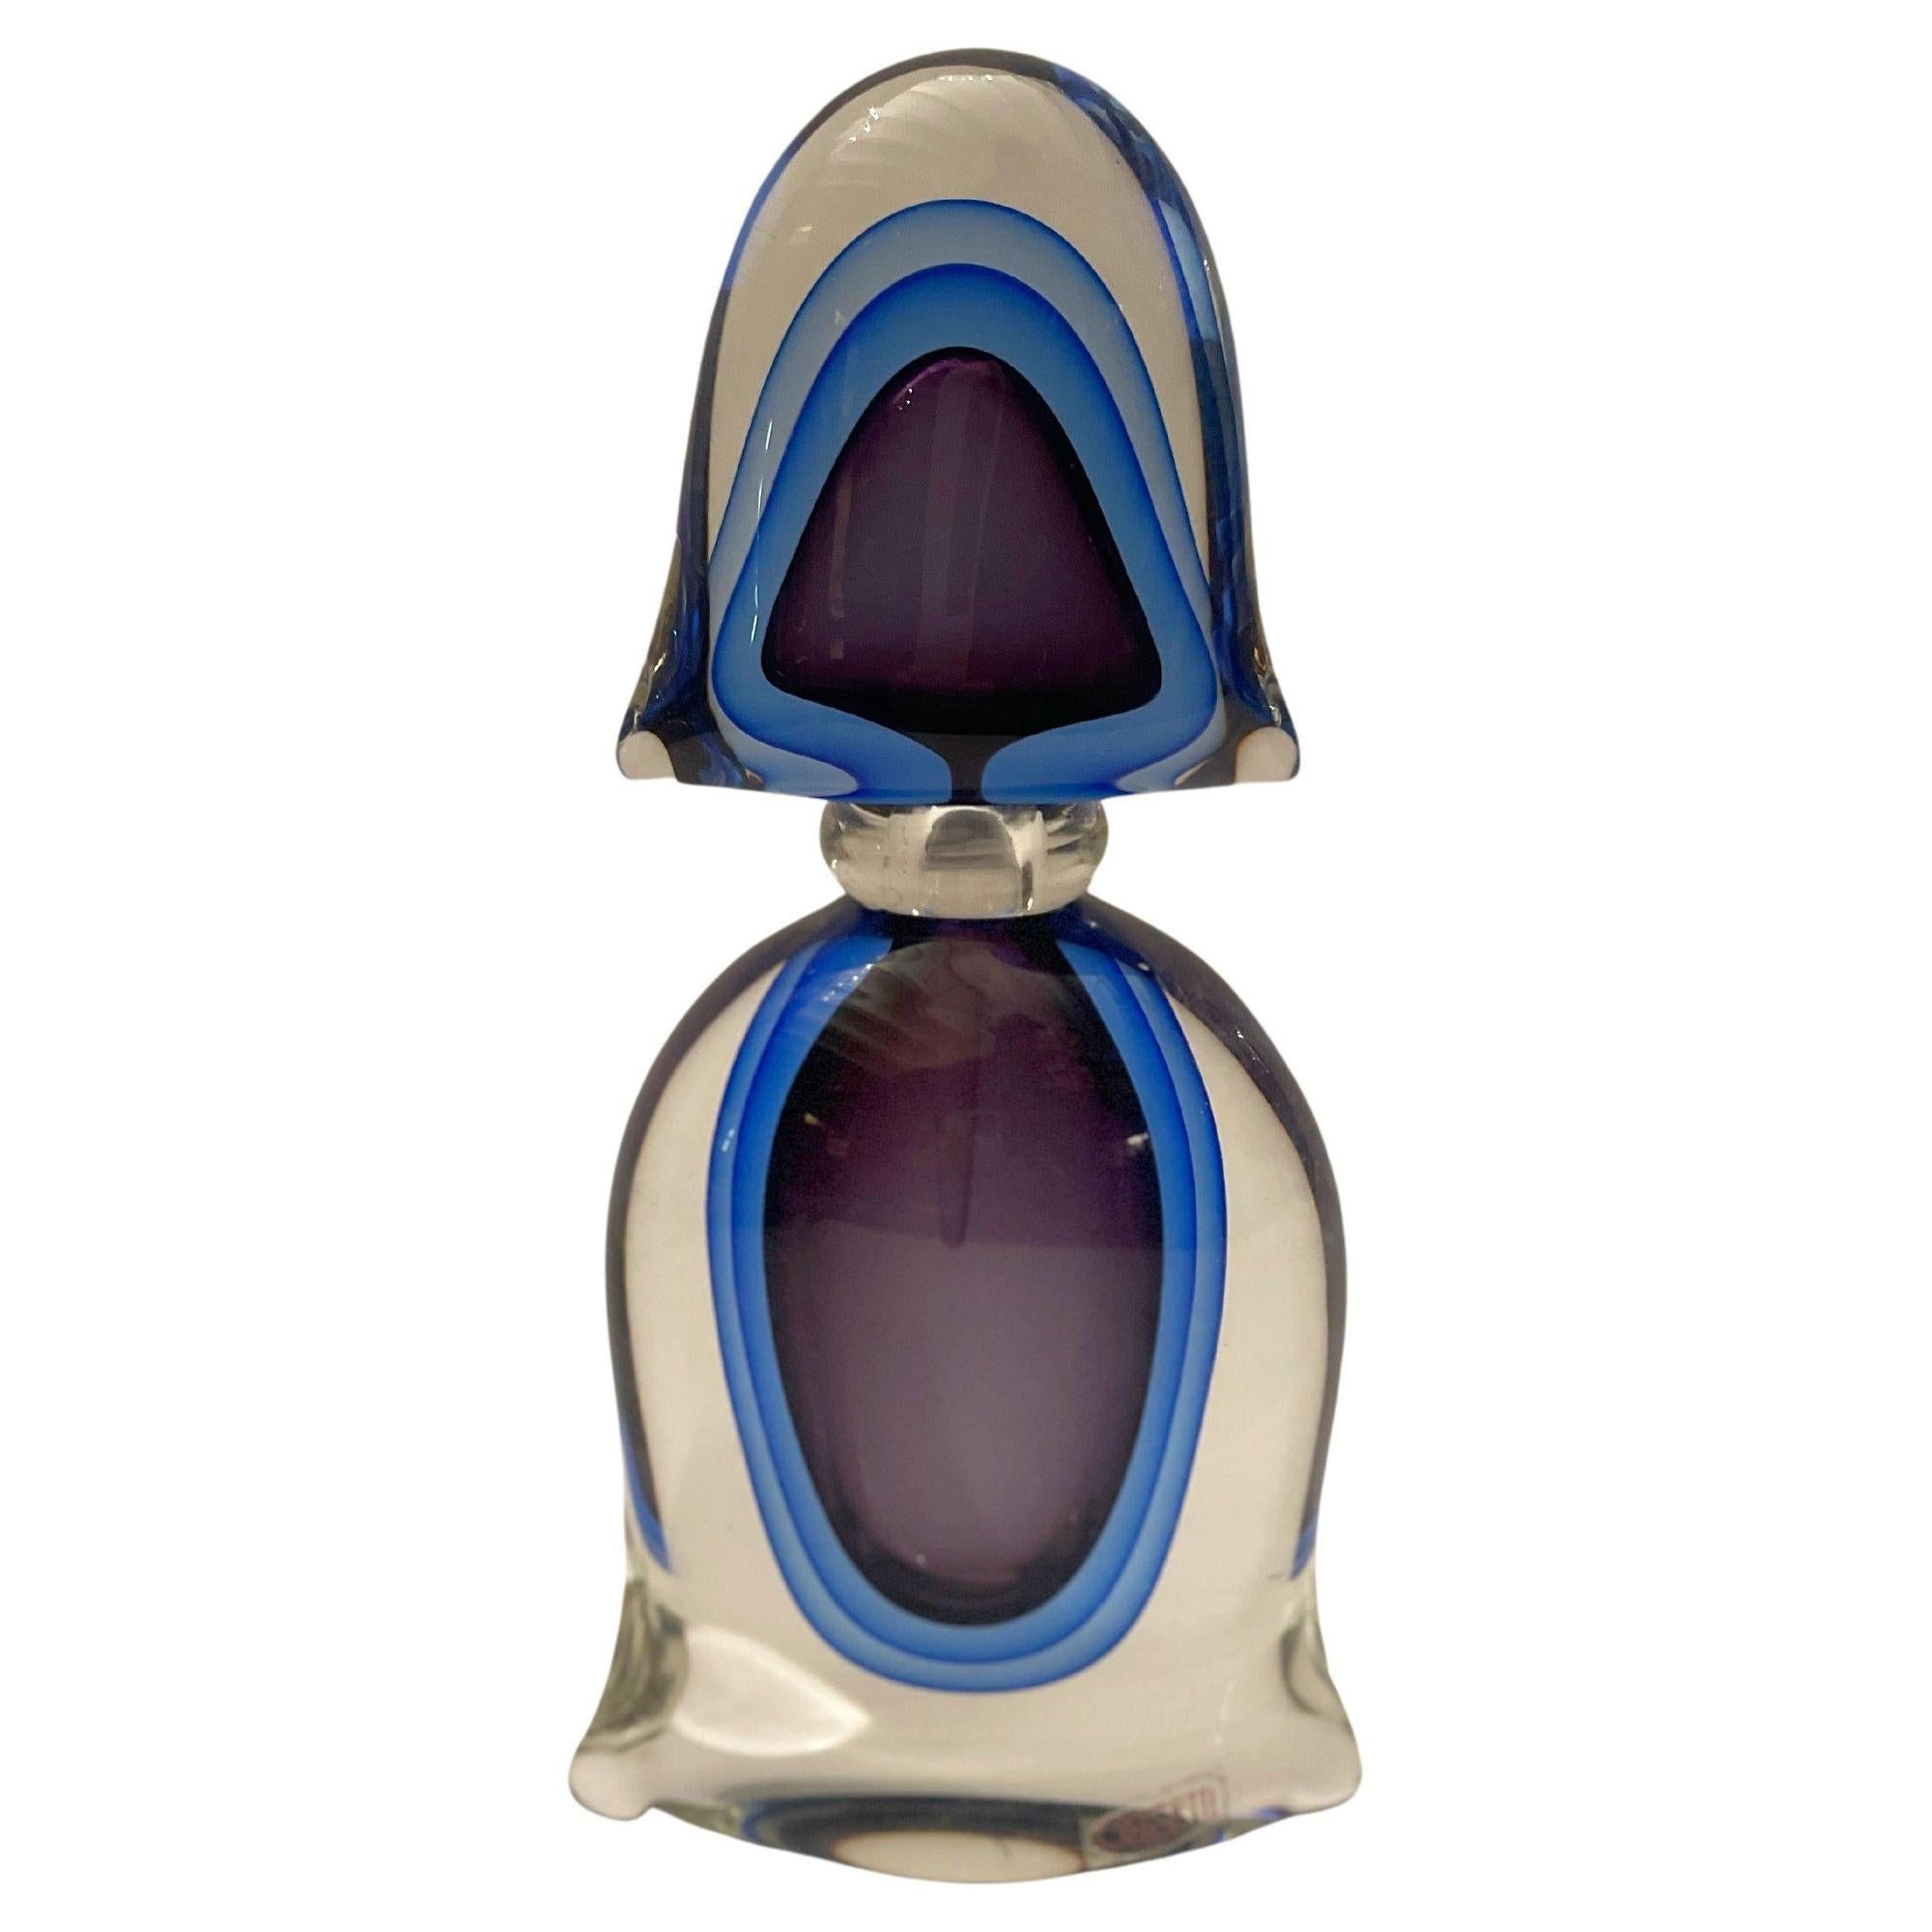 Satz Parfümflaschen aus Murano-Glas, Made in Italy, 1960er Jahre. 
Einige haben noch den Originalaufkleber.
Abmessungen: 
Große Flasche: 11 